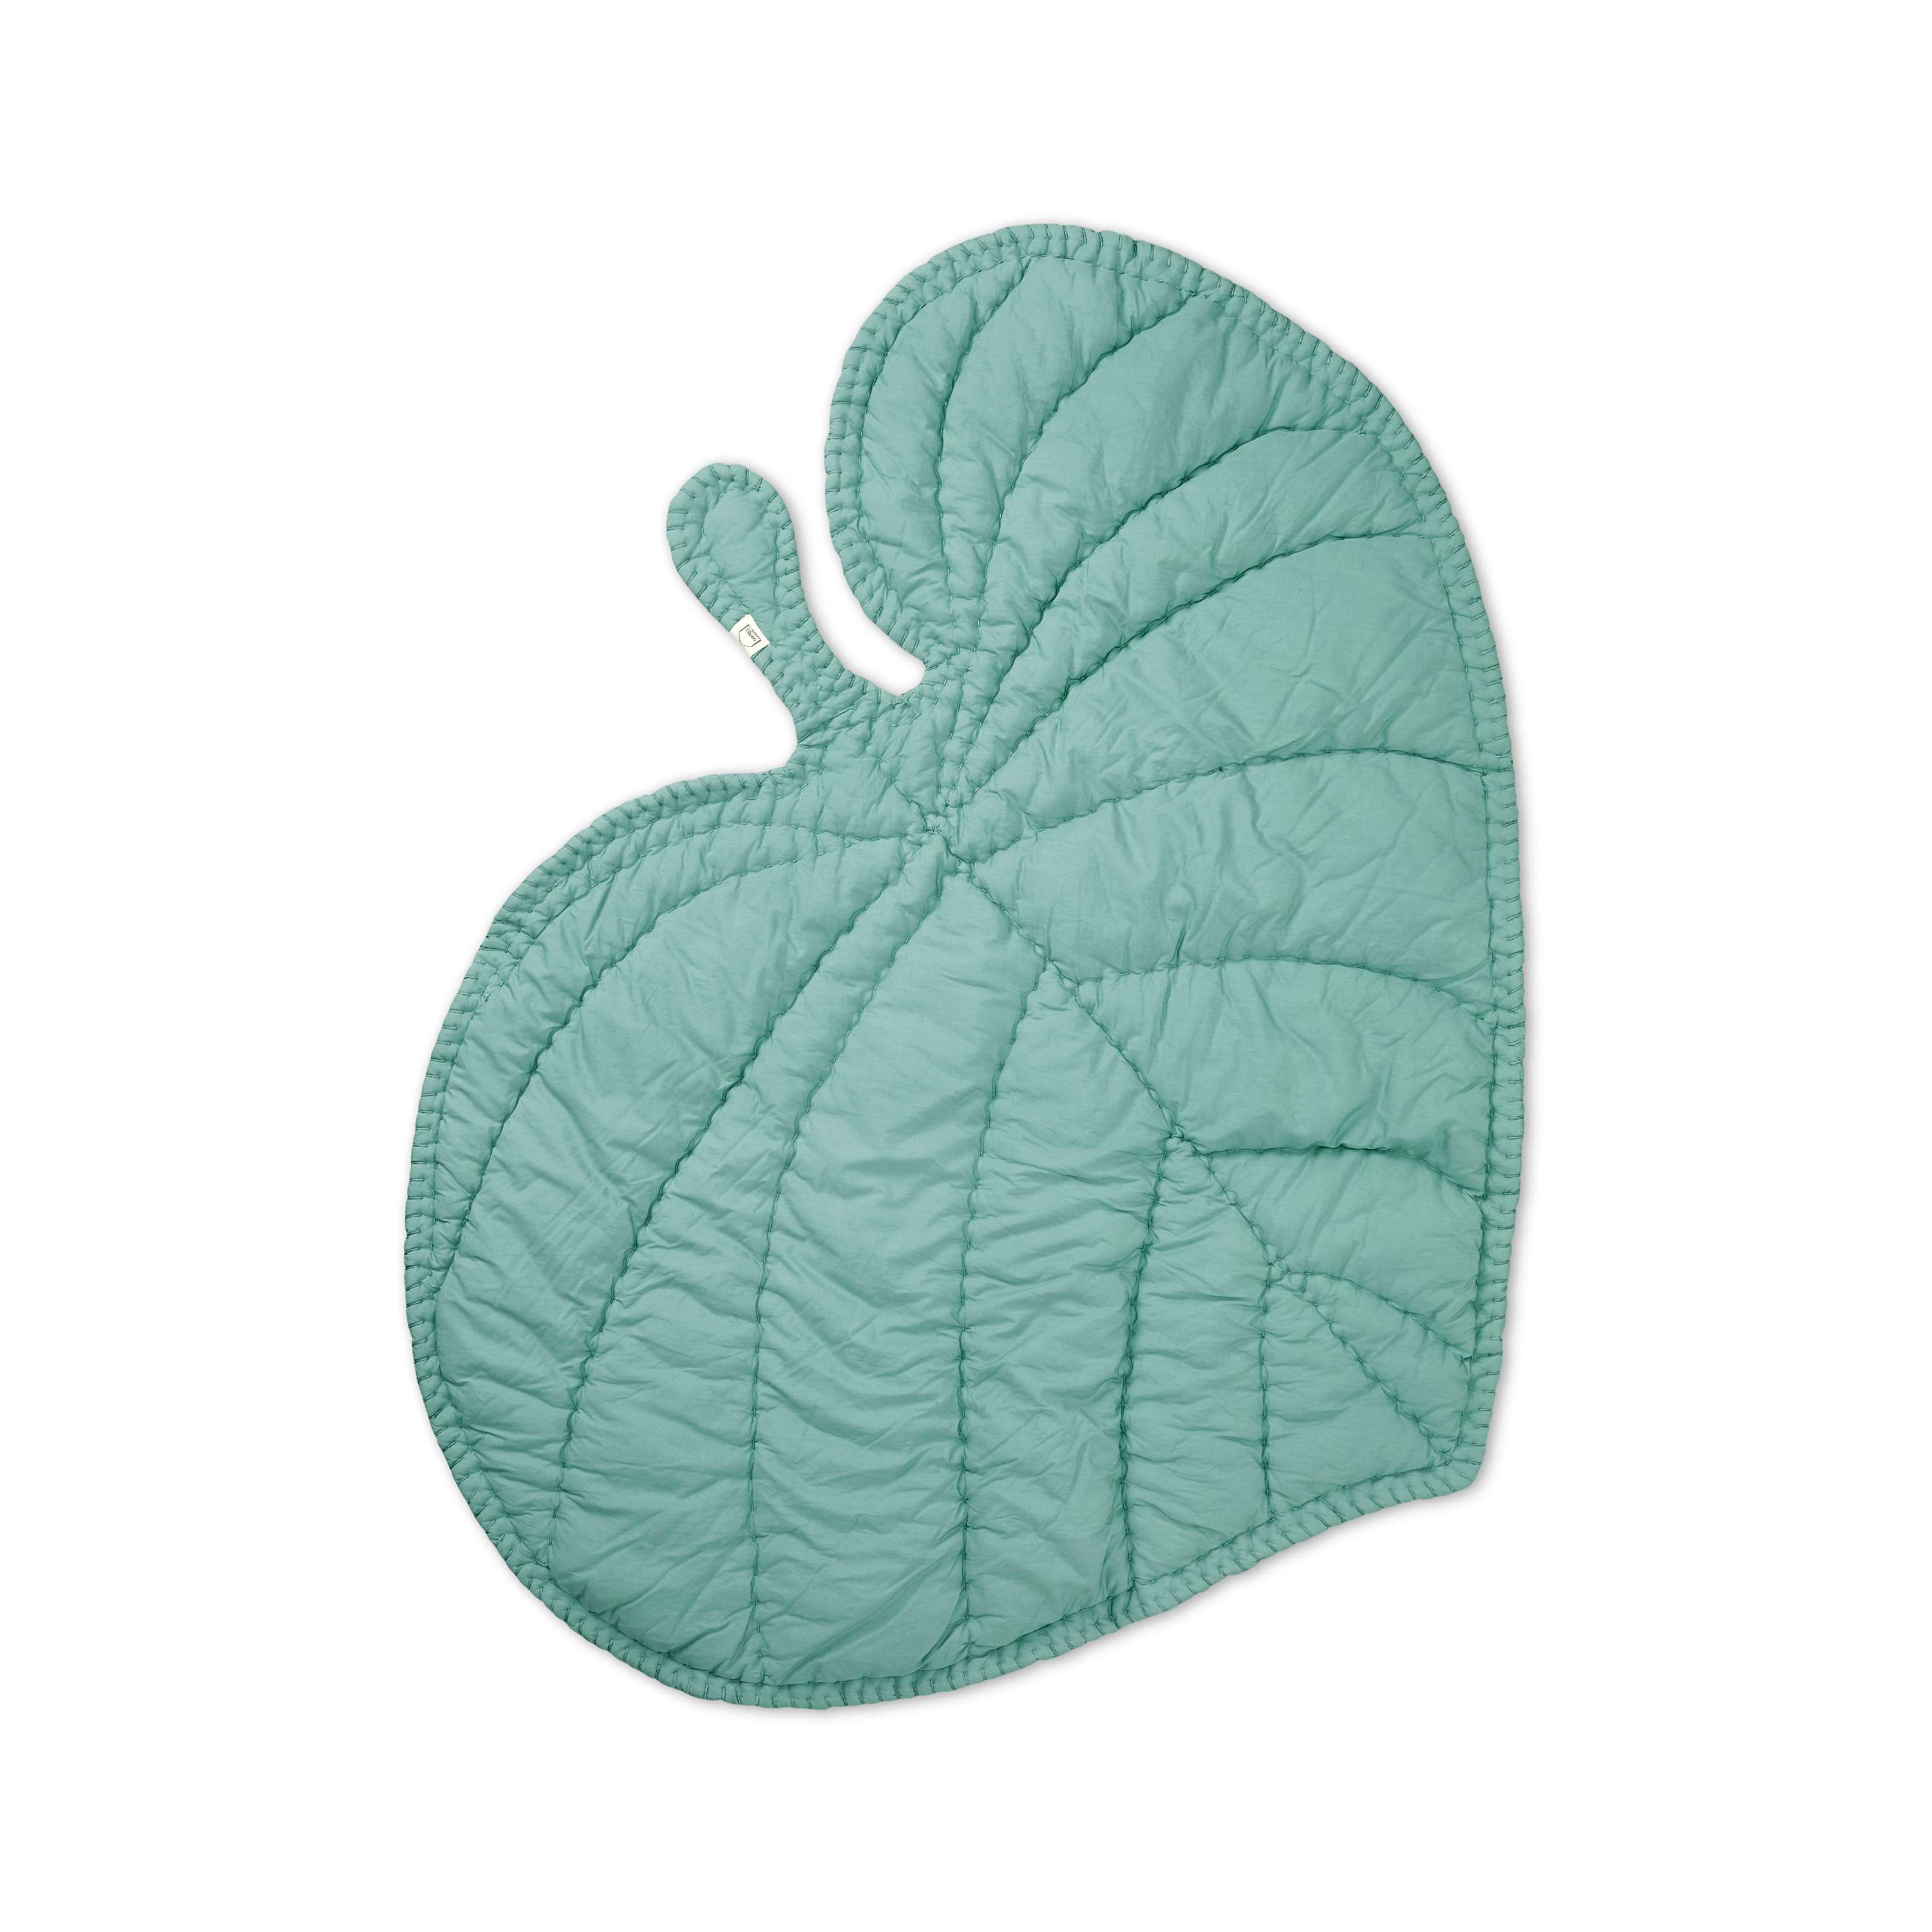 Nofred - Leaf Blanket - Mint Green